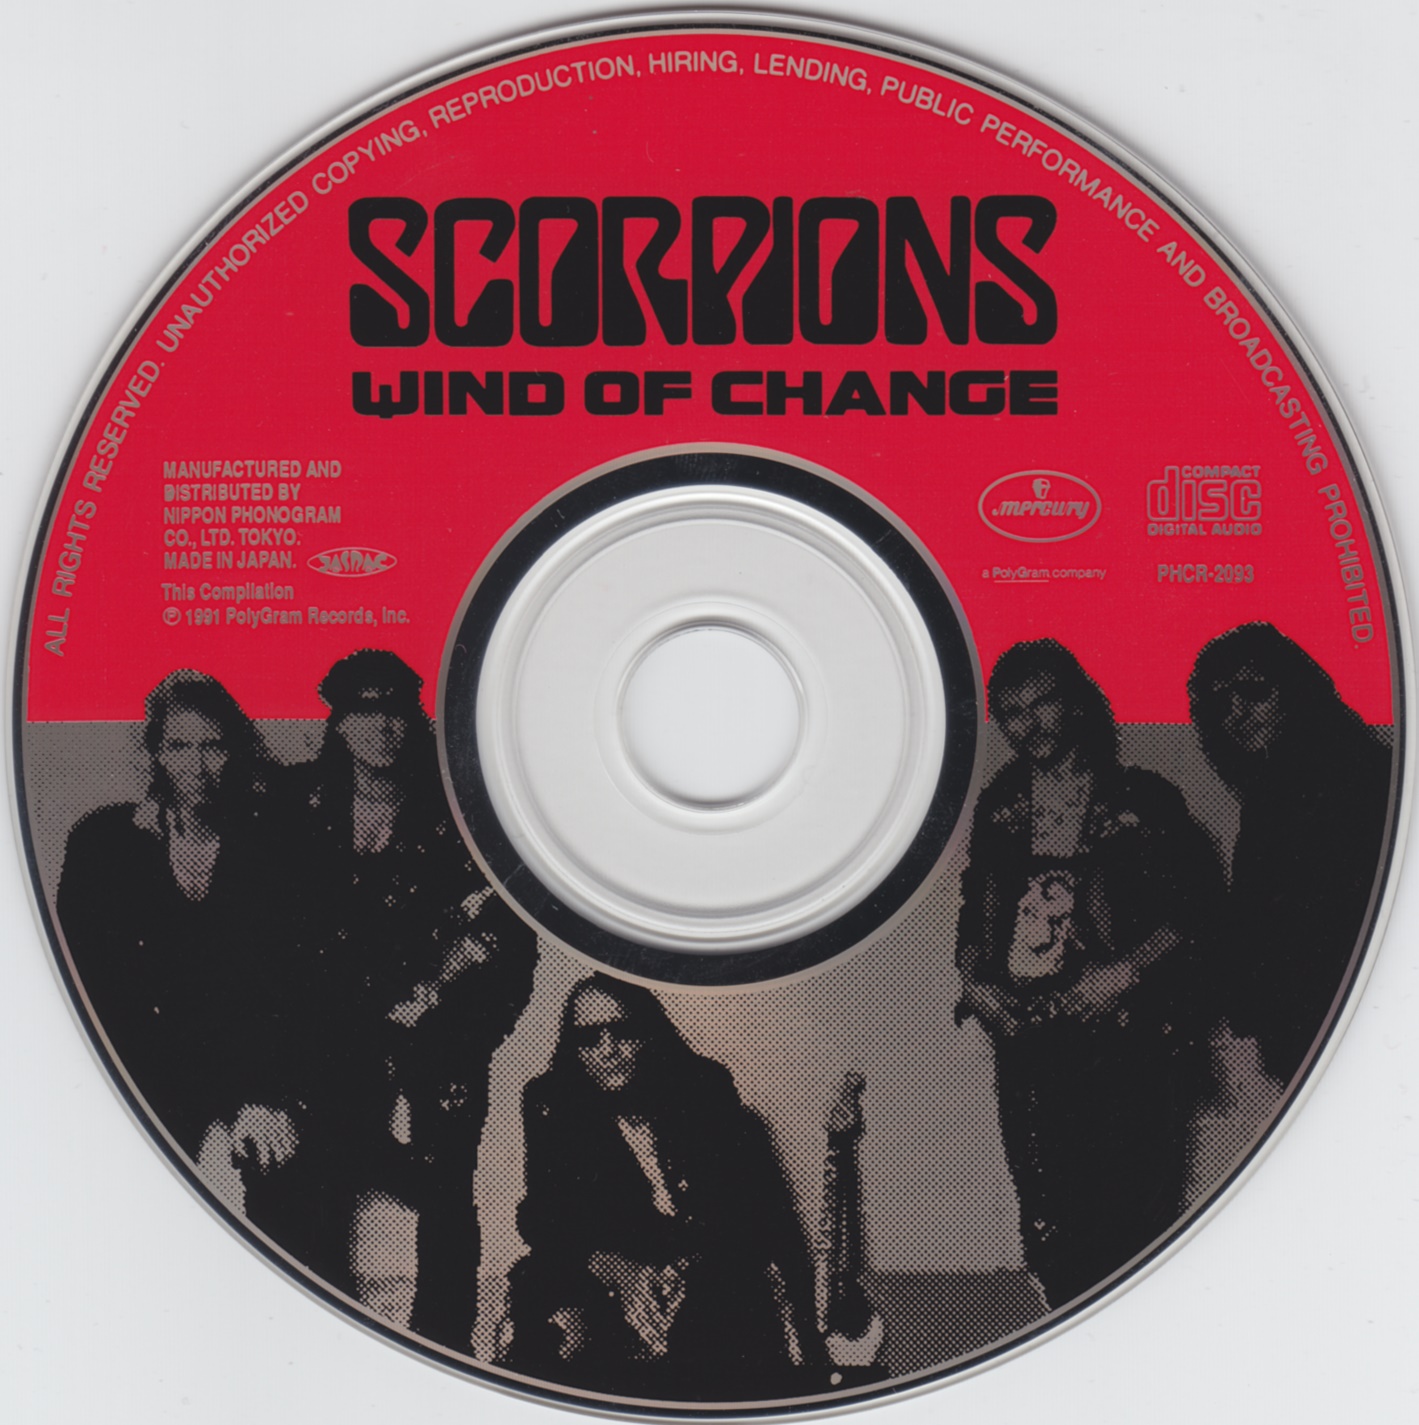 Scorpions.